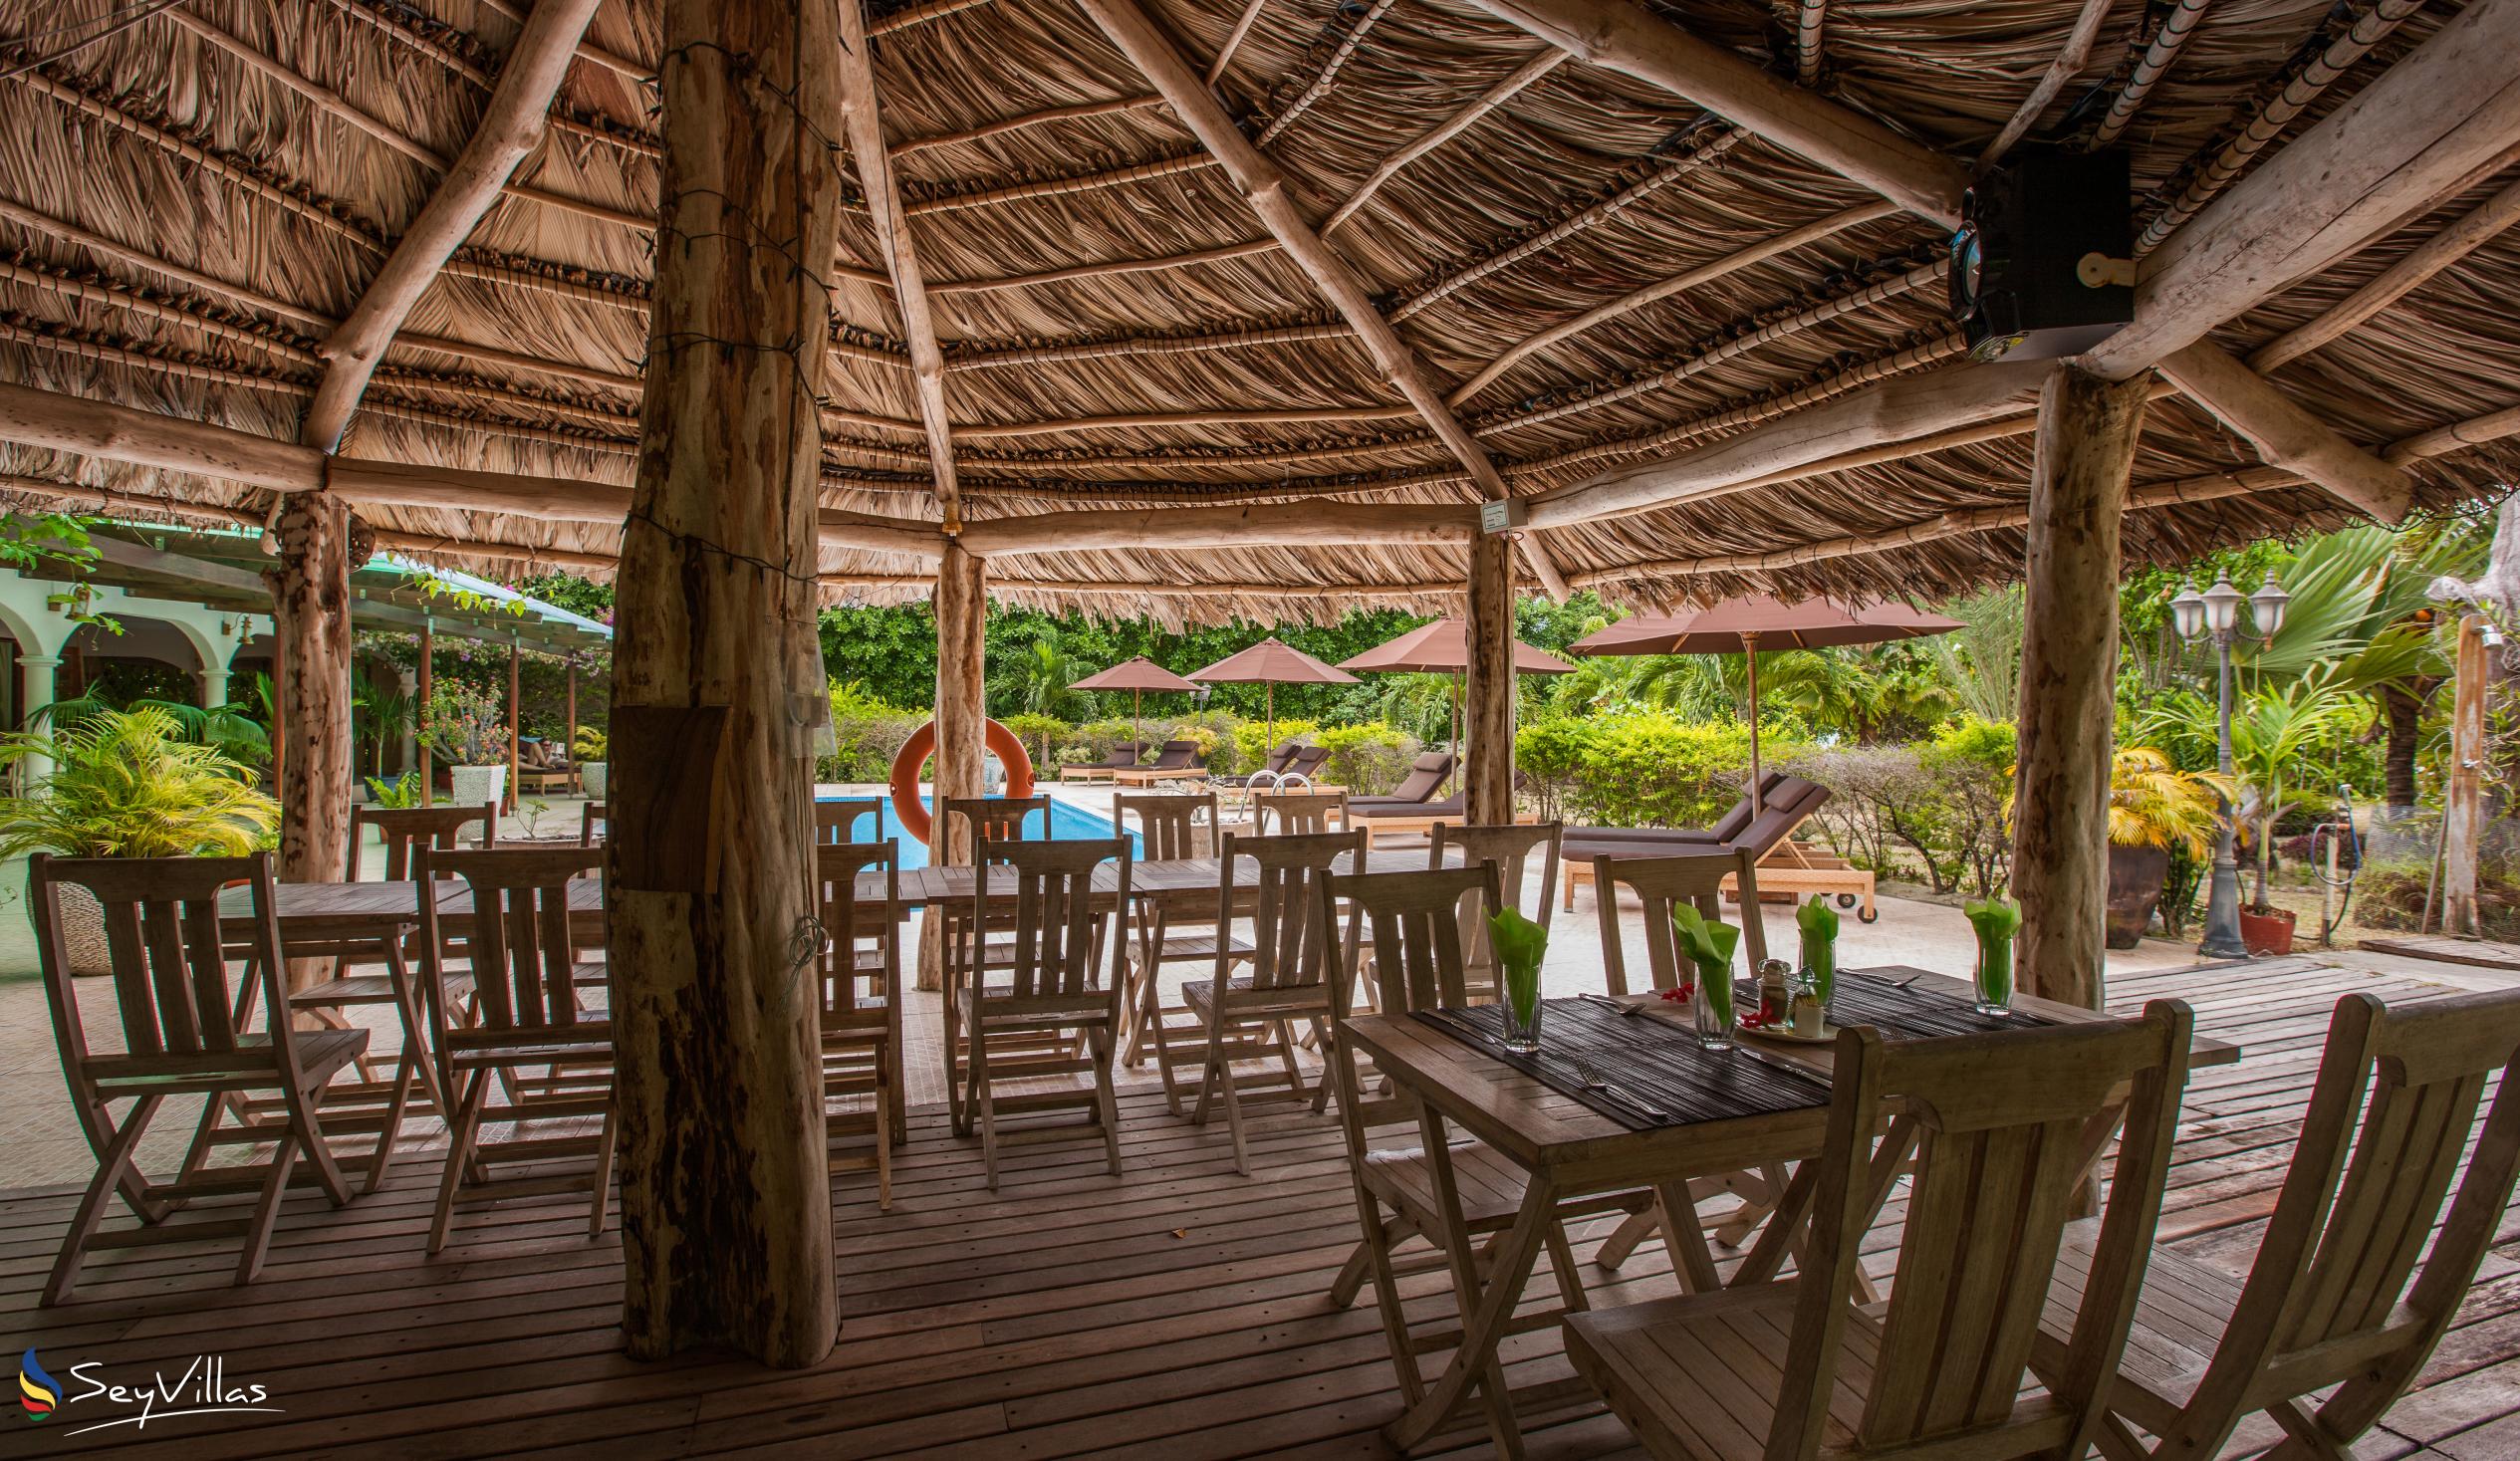 Photo 19: Villa de Cerf - Indoor area - Cerf Island (Seychelles)